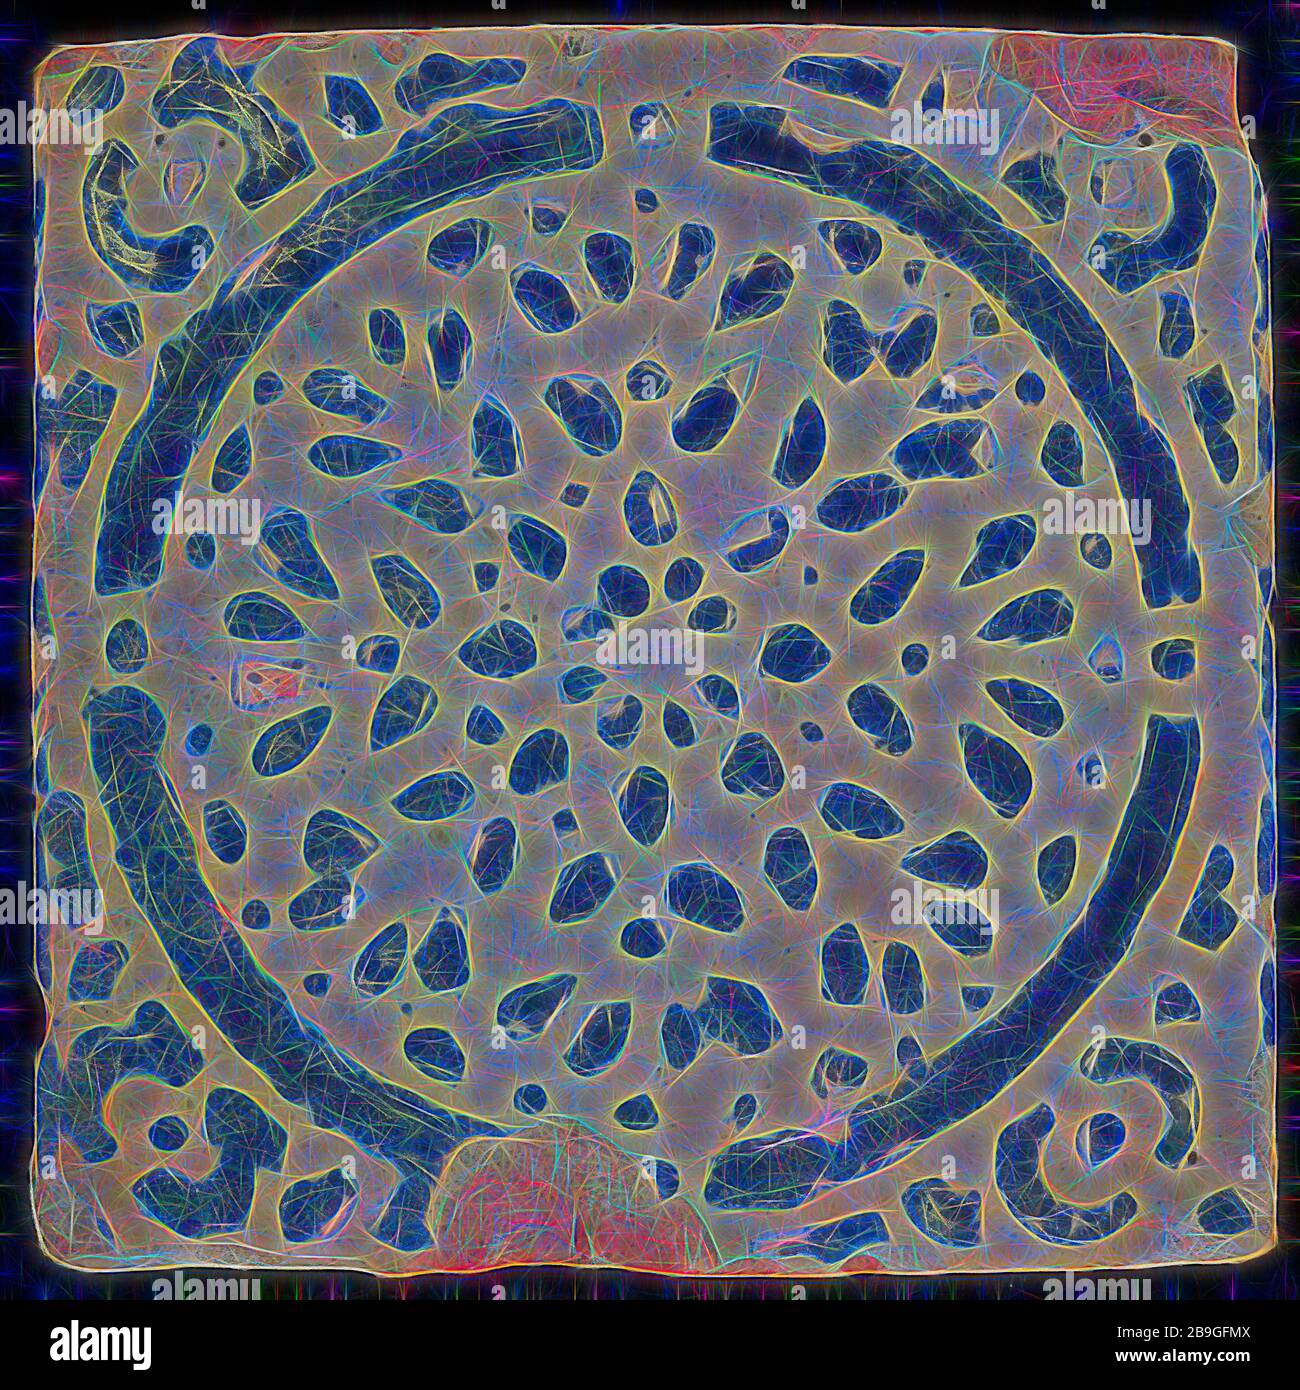 Zierfliese, blauer Kreis, gebürstete blaue Tropfen, Fußbodenfliesen, Keramik Steingutglasur, Schmuck im Zentrum. Blauer Kreis und gebürstete Tropfen Stockfoto